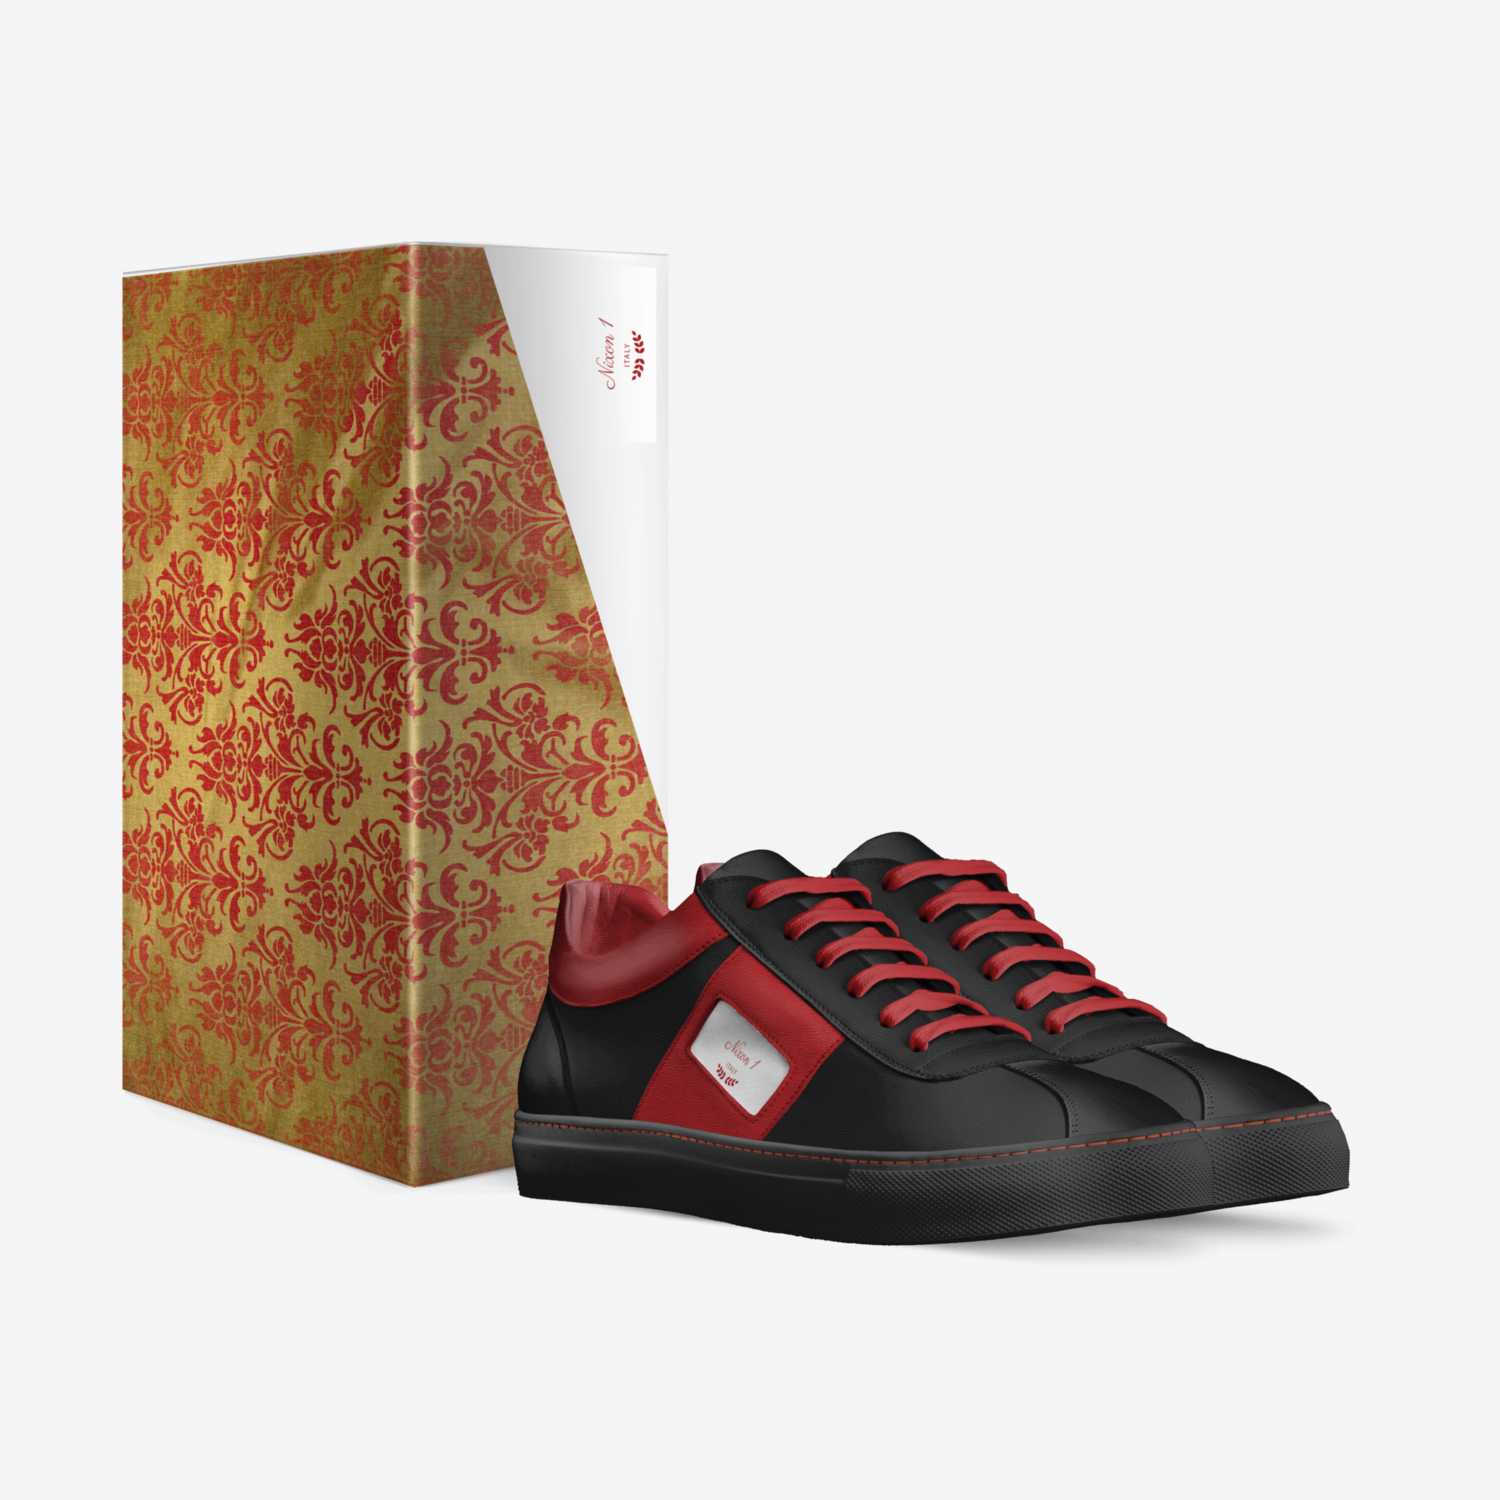 Nixon 1 custom made in Italy shoes by Vaughn Nixon Jr | Box view